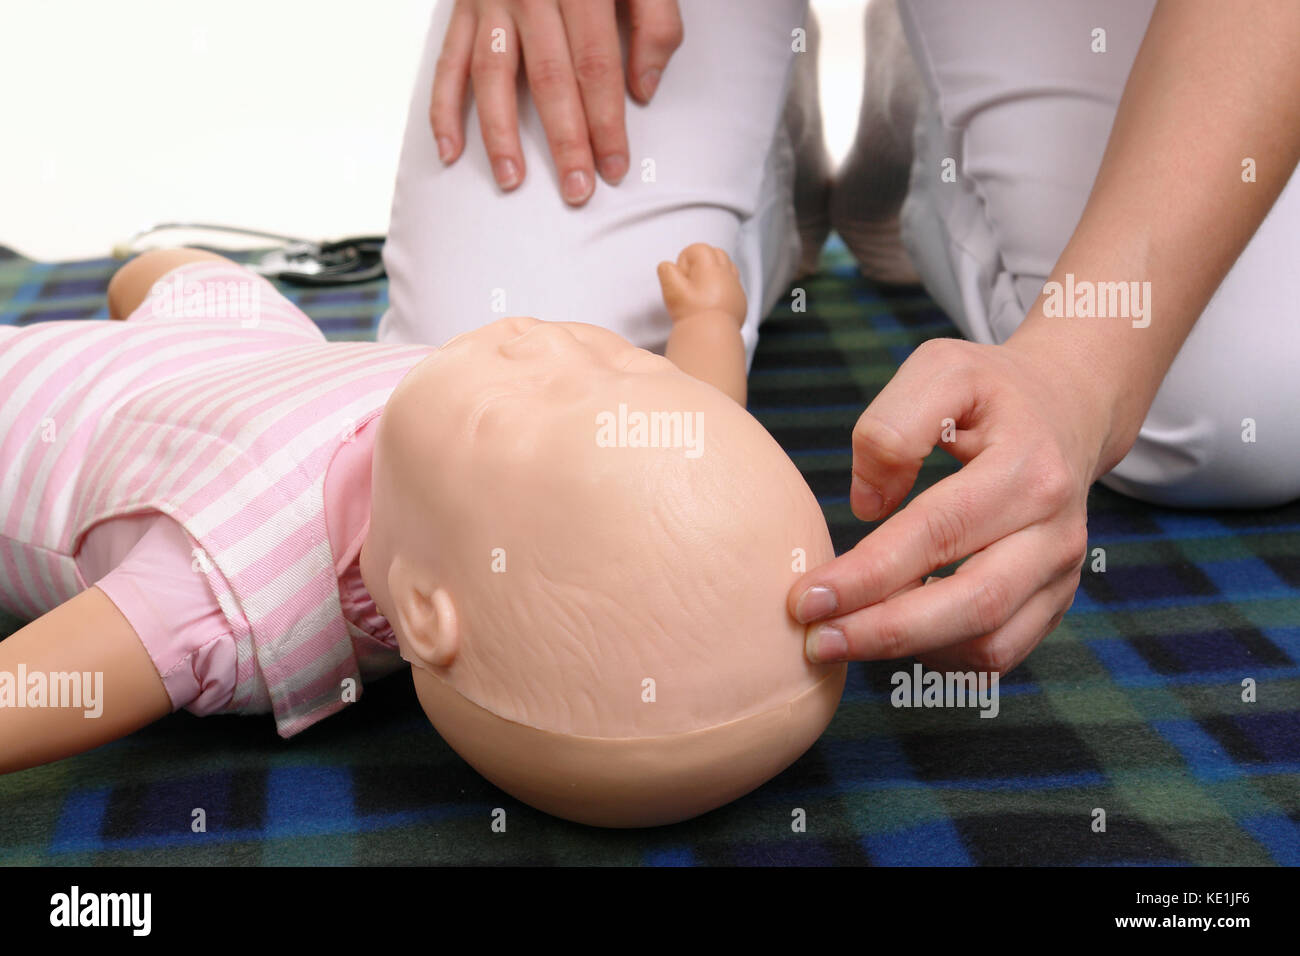 Kleinkinder Erste Hilfe - Erste Hilfe Ausbilder zeigen, wie Impuls auf Kleinkinder dummy anterior Fontanelle zu prüfen. Stockfoto